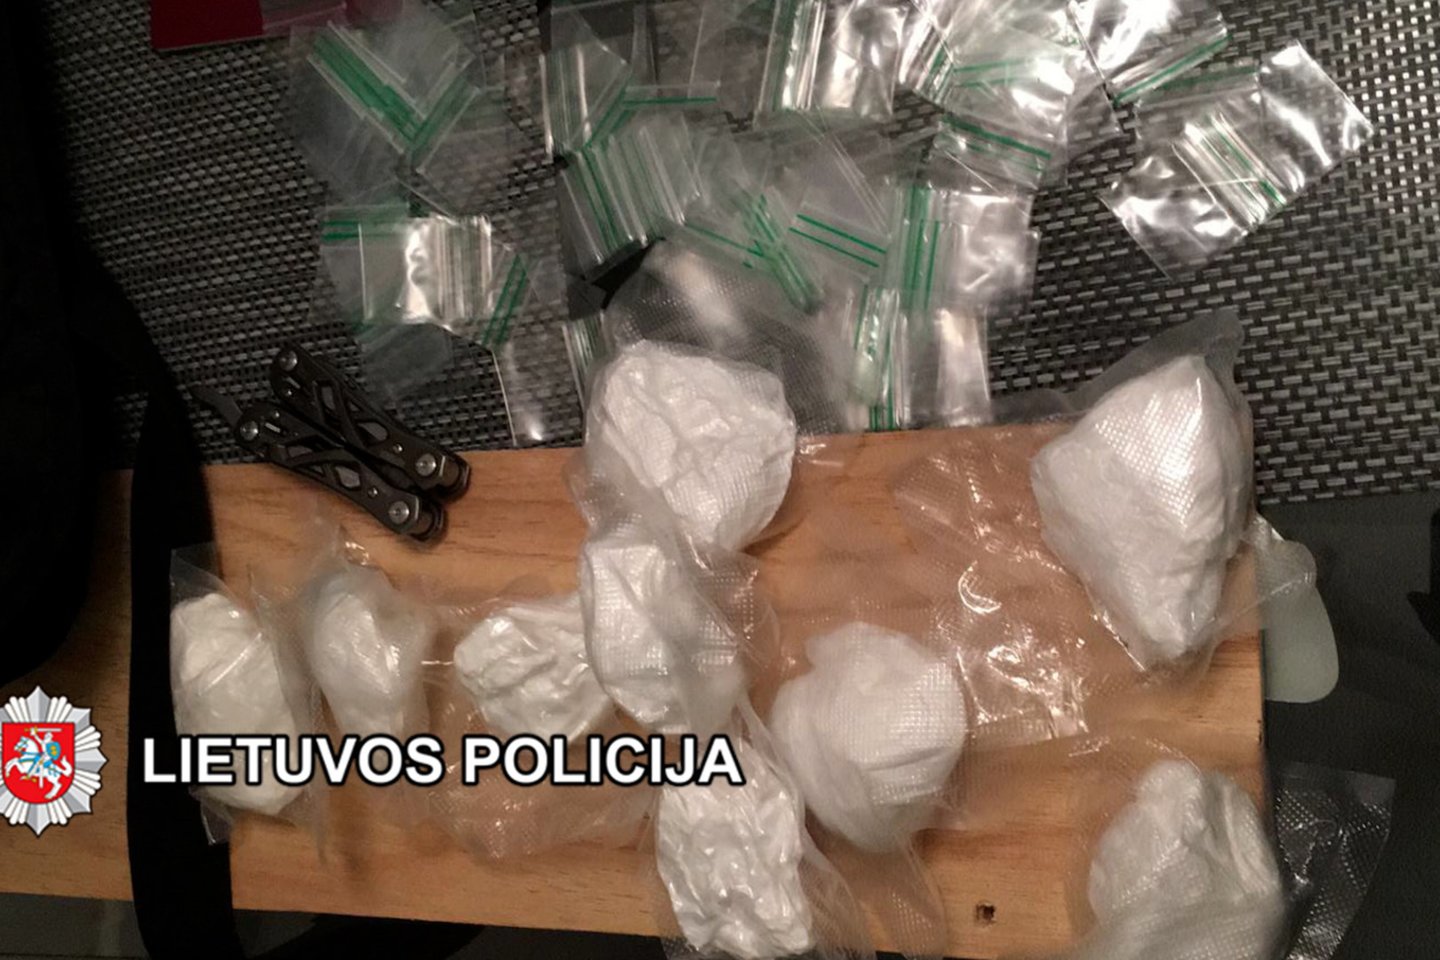  Klaipėdoje bus teisiamas kokaino kontrabandos į Šiaurės Airiją organizatorius.<br> Klaipėdos apskrities VPK nuotr.